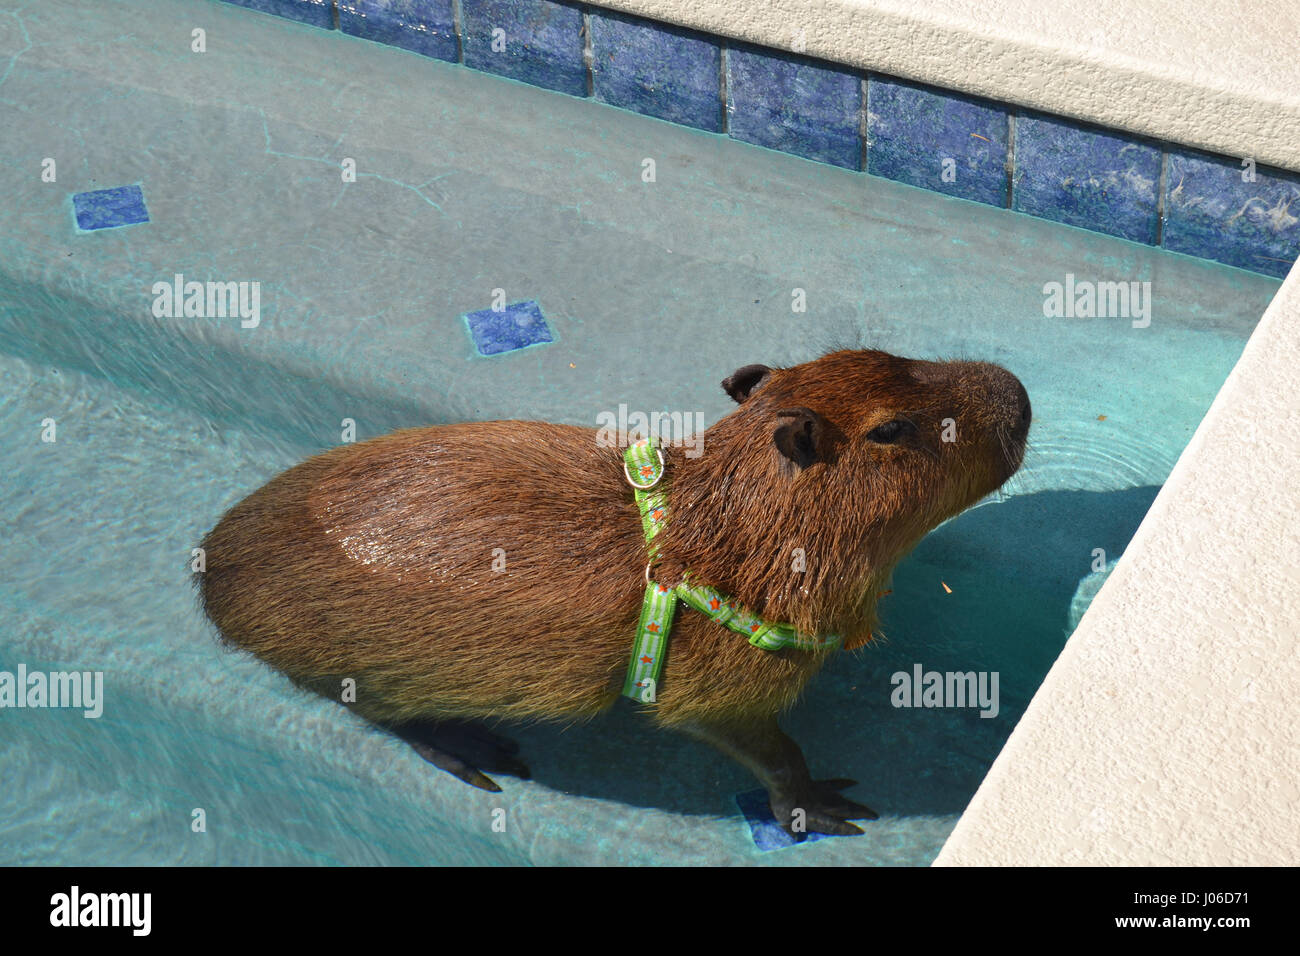 LAS VEGAS, USA: A lustigen Video hat eine riesige aquatische Promi Nagetier genießen Sie ein Bad in seinem eigenen Pool erwischt. Entzückende Bilder und Videos zeigen vier-Fuß-langen, 100-Pfund JoeJoe der Capybara paddeln faul am Pool, unter Wasser tauchen und geschickt auf die Leiter, die er schaut, wie er benutzen wird, um heraus klettern auftauchen. Die Bilder und Clips wurden von JoeJoe Besitzer Cody Kennedy in ihrem Haus in Las Vegas aufgenommen. Stockfoto